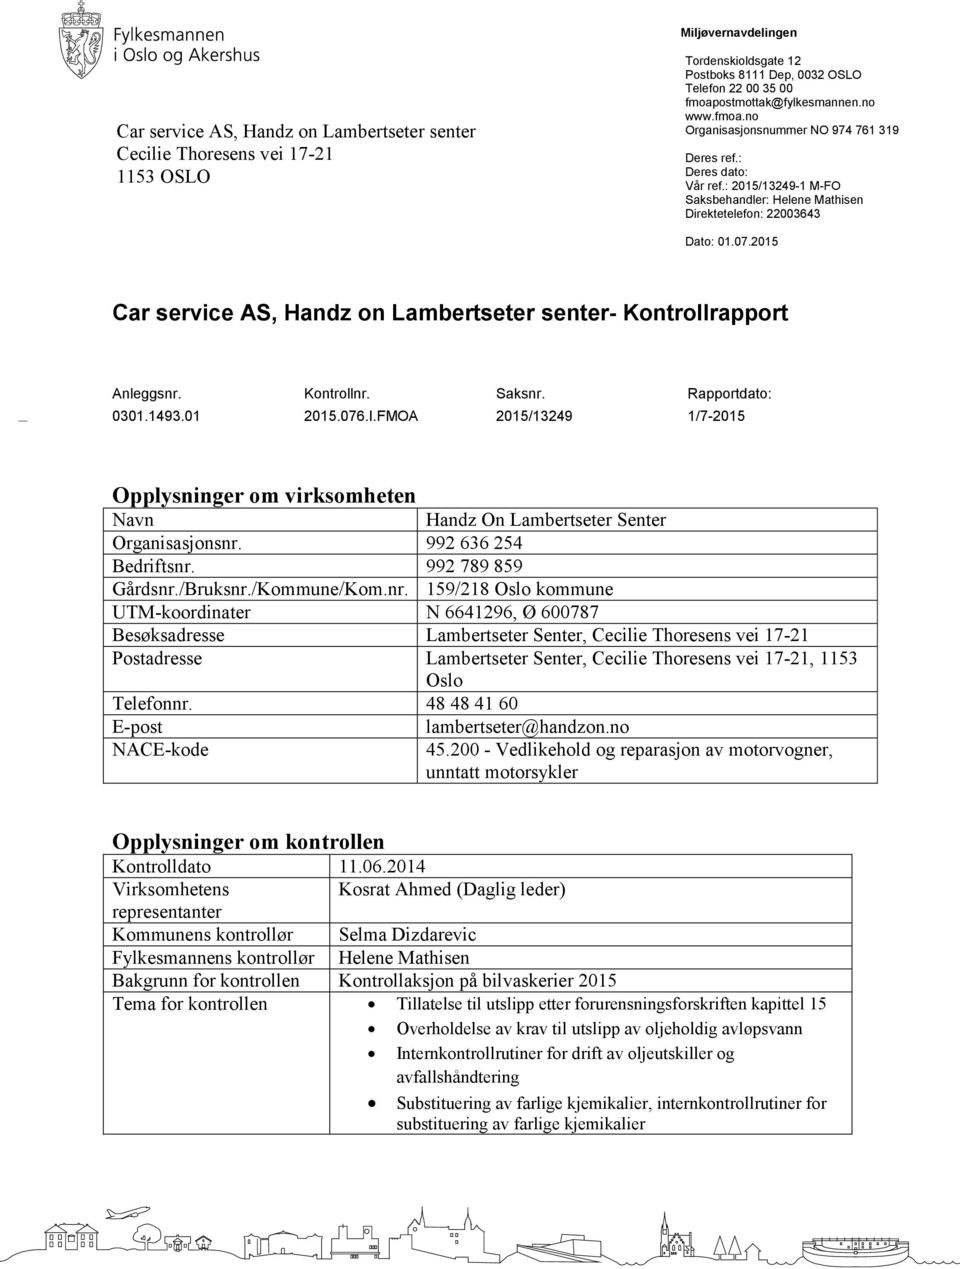 2015 Car service AS, Handz on Lambertseter senter- Kontrollrapport Anleggsnr. Kontrollnr. Saksnr. Rapportdato: 0301.1493.01 2015.076.I.